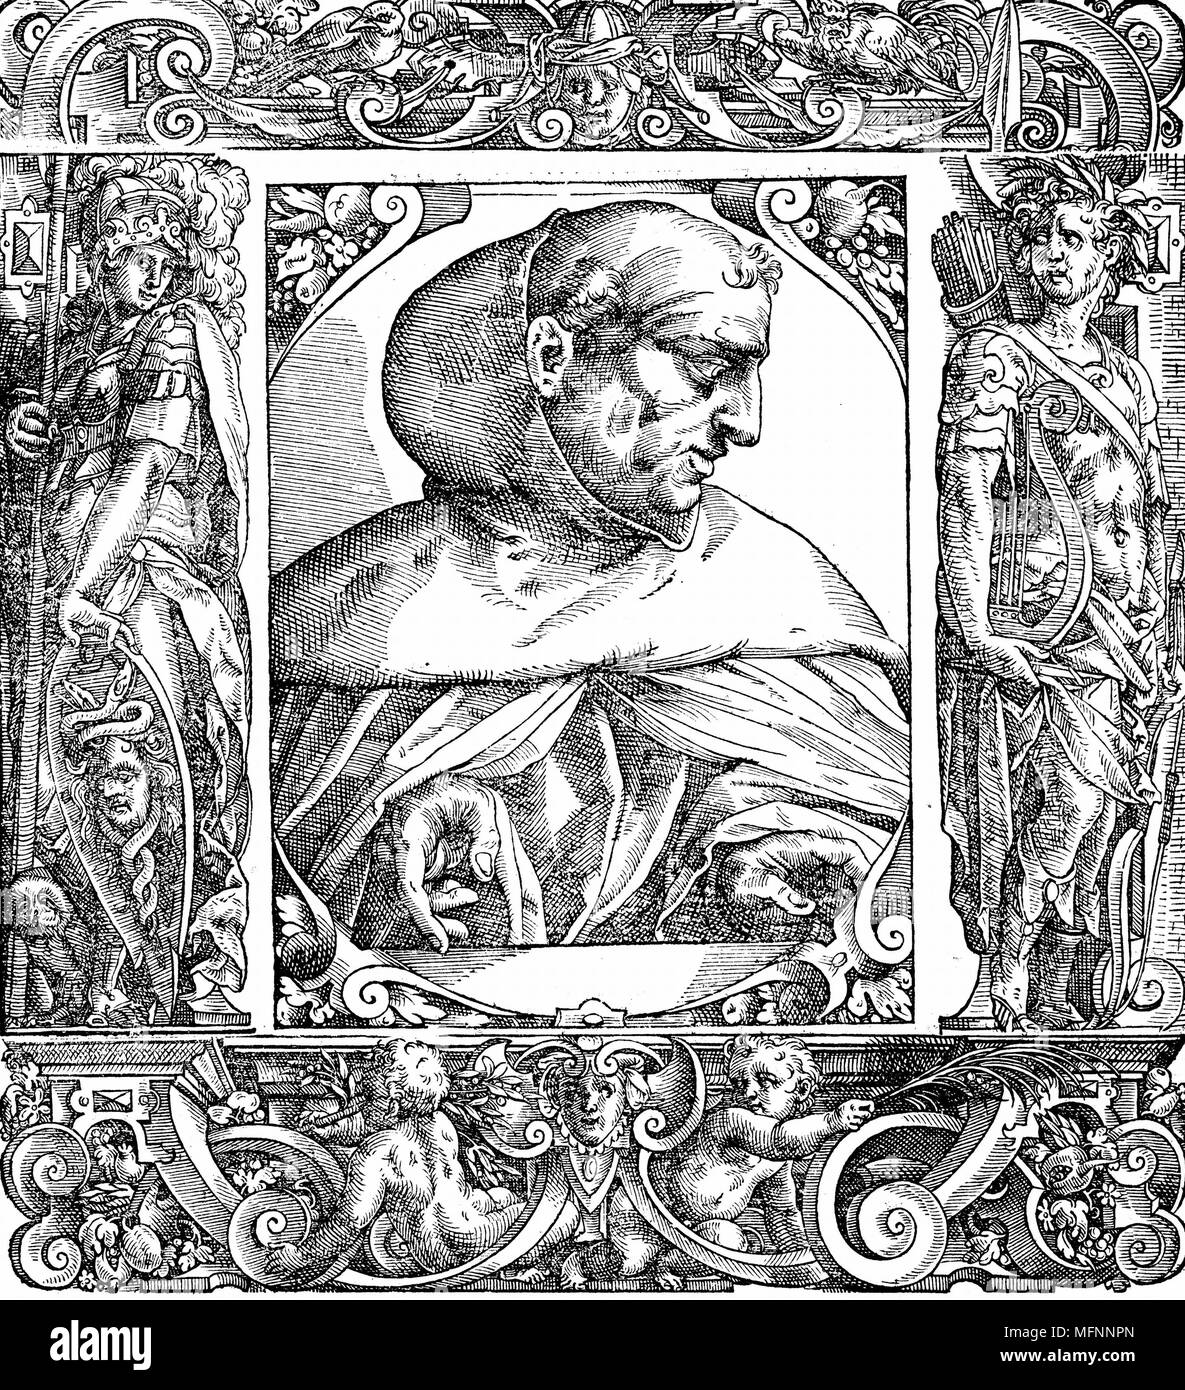 Albertus Magnus (c 1200-1280) Italienische Dominikaner mönch namens 'Doctor Universalis". Bischof von Regensburg, 1260. Verschmolzen Theologie und Aristotelismus. 16. jahrhundert Porträt Holzschnitt. Stockfoto